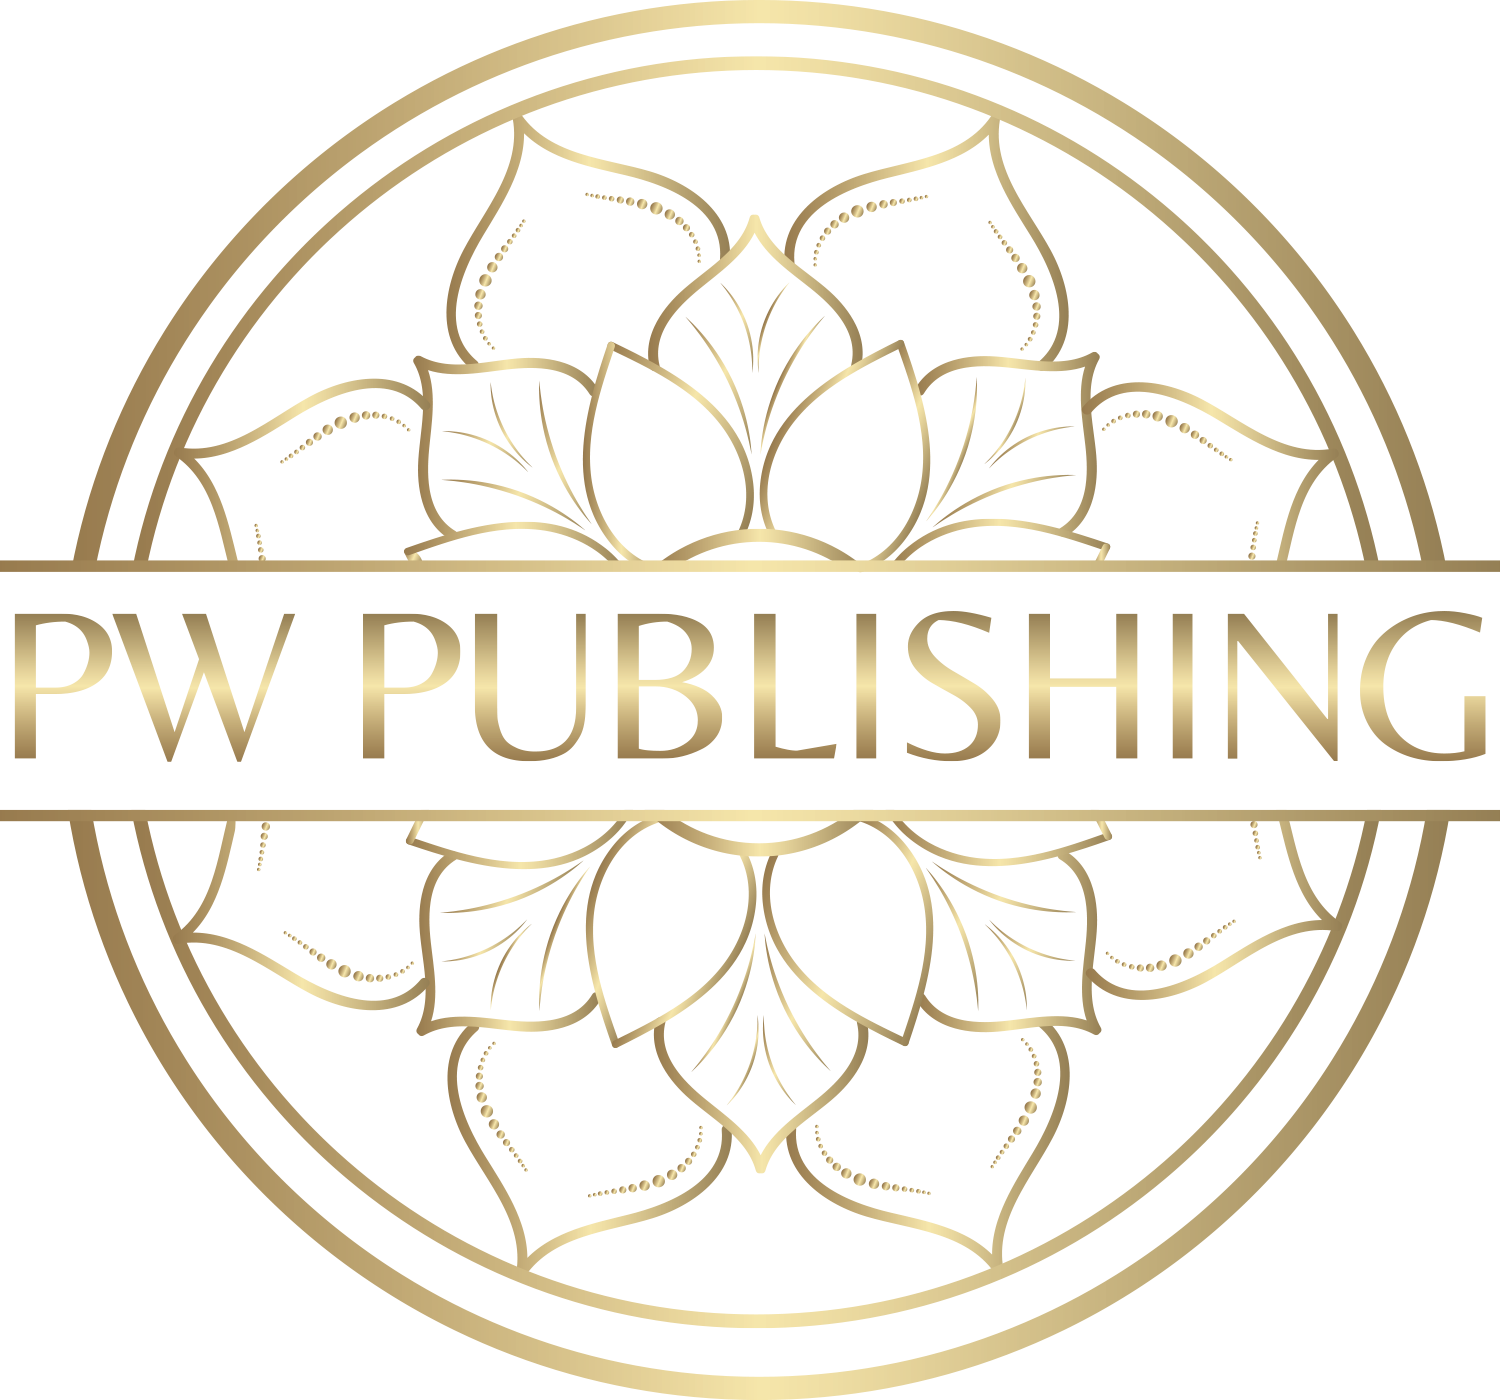 PW Publishing